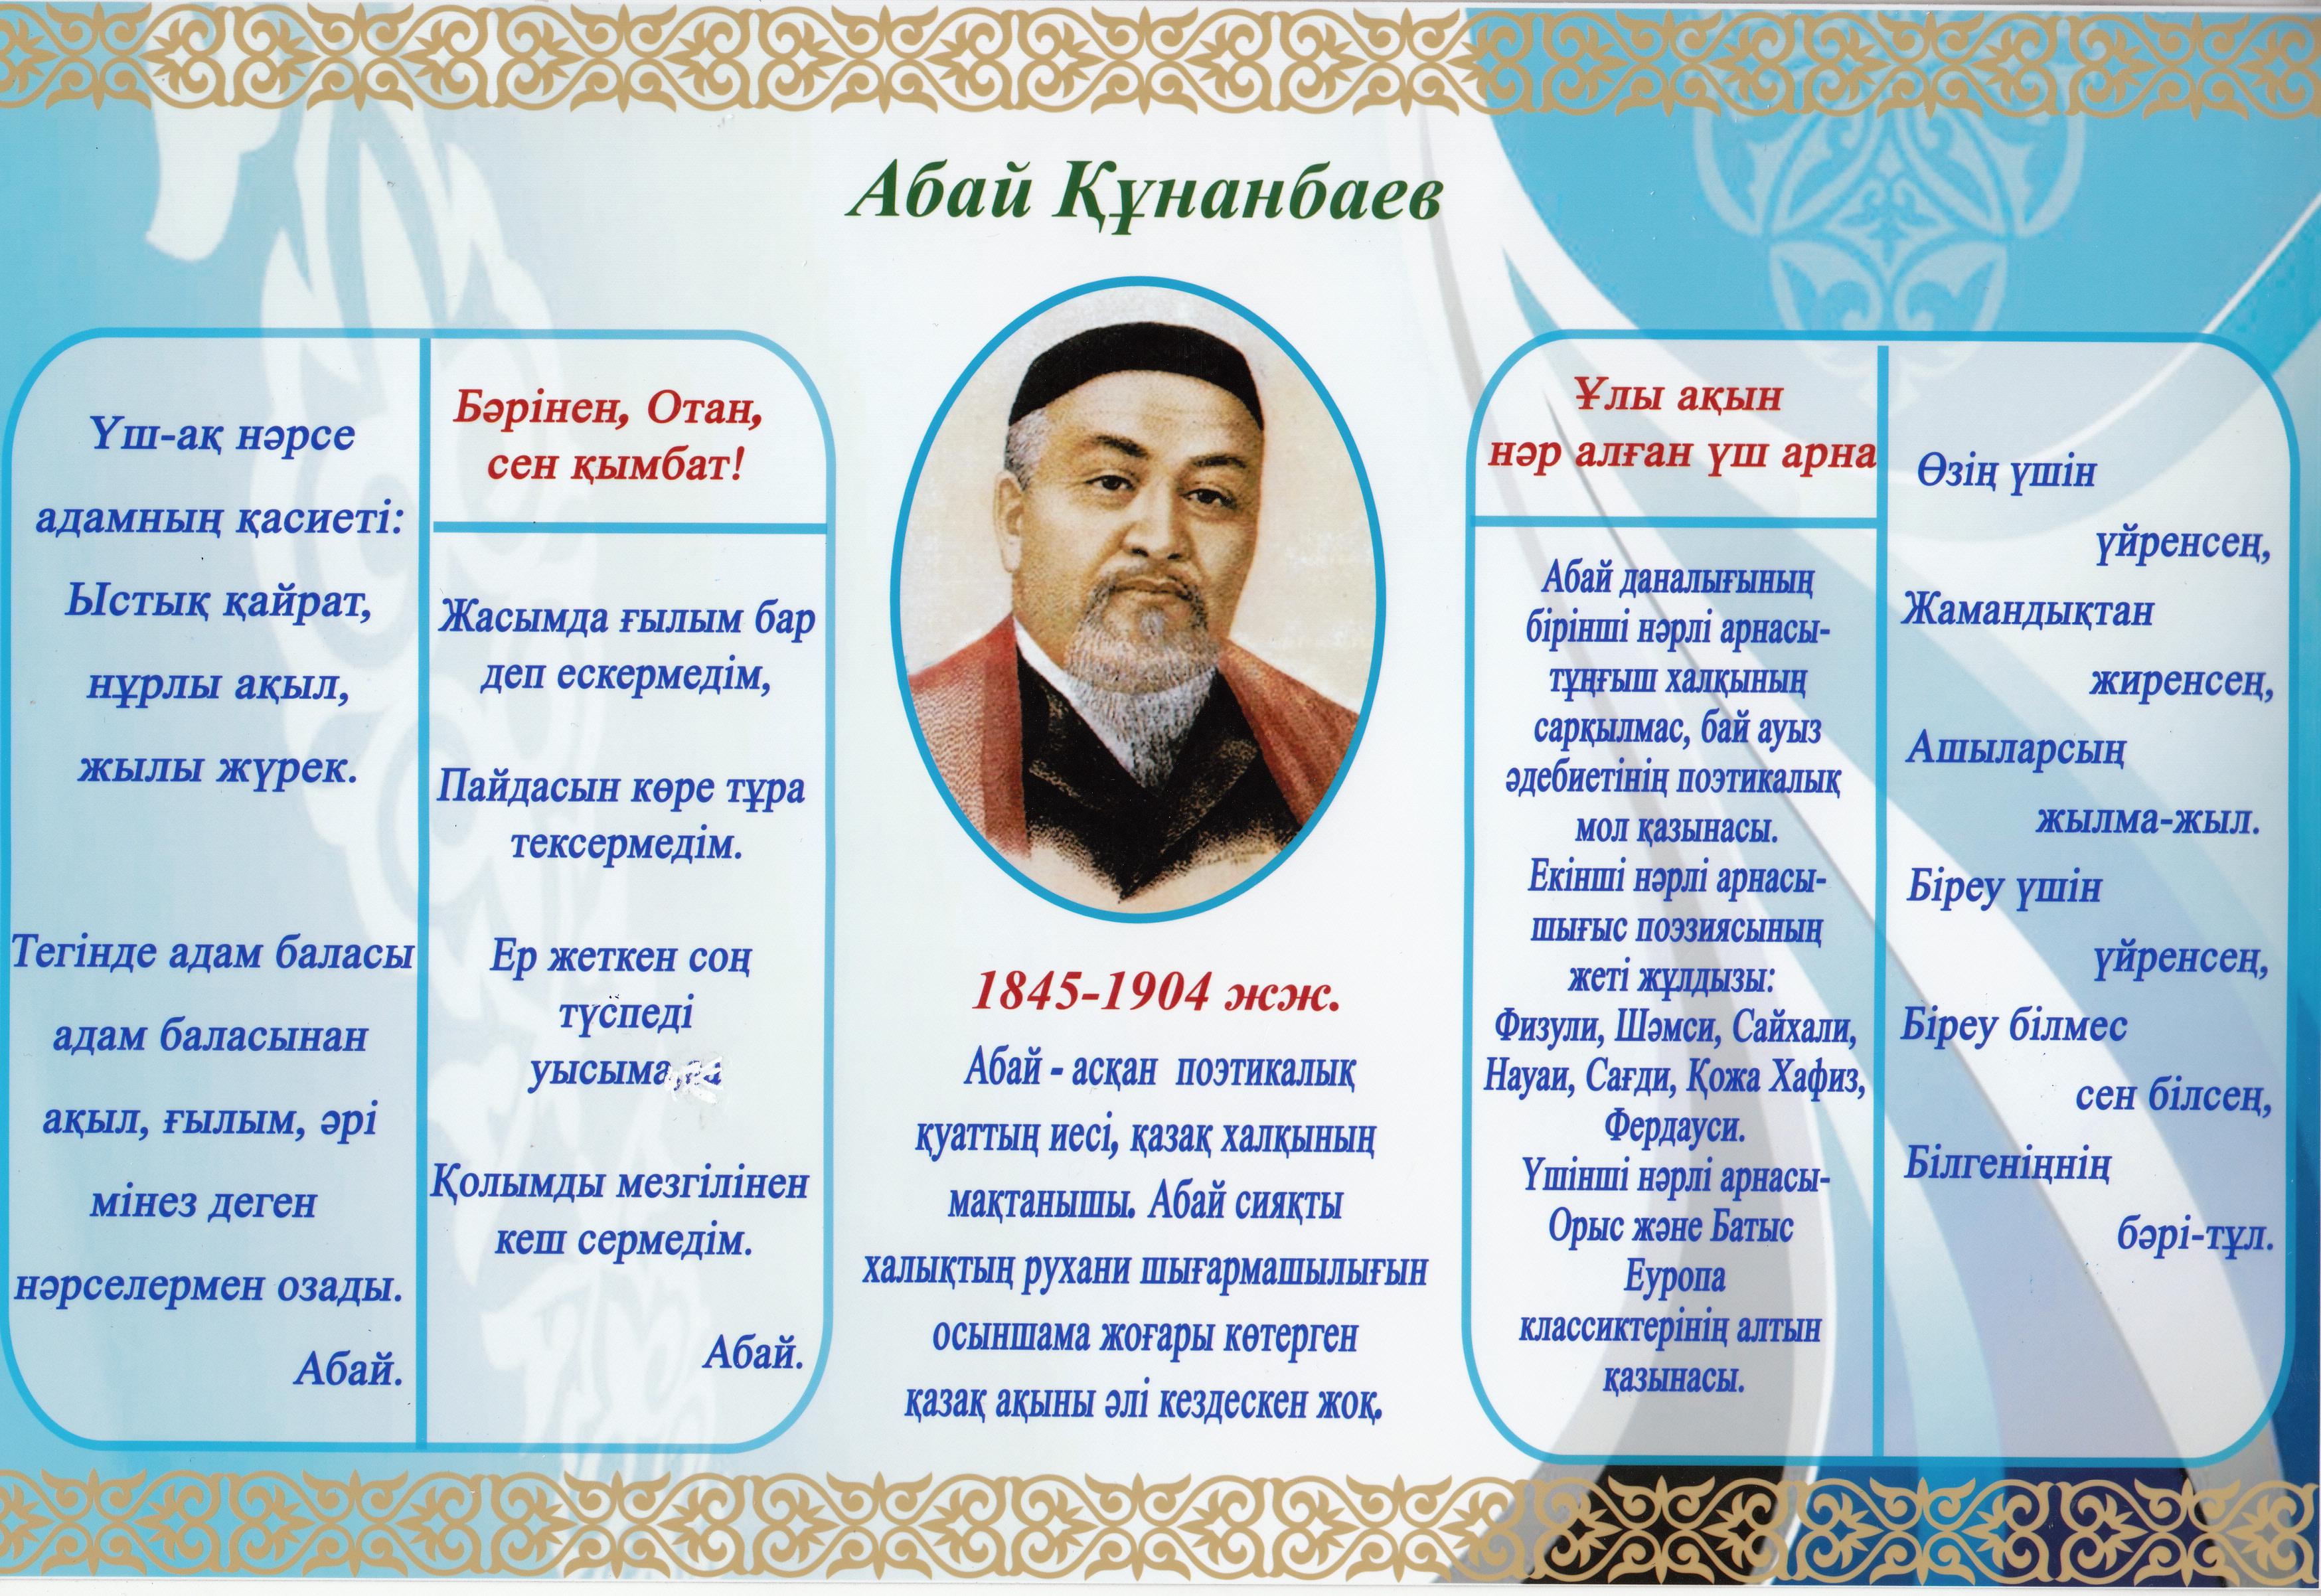 картинки про казахский язык